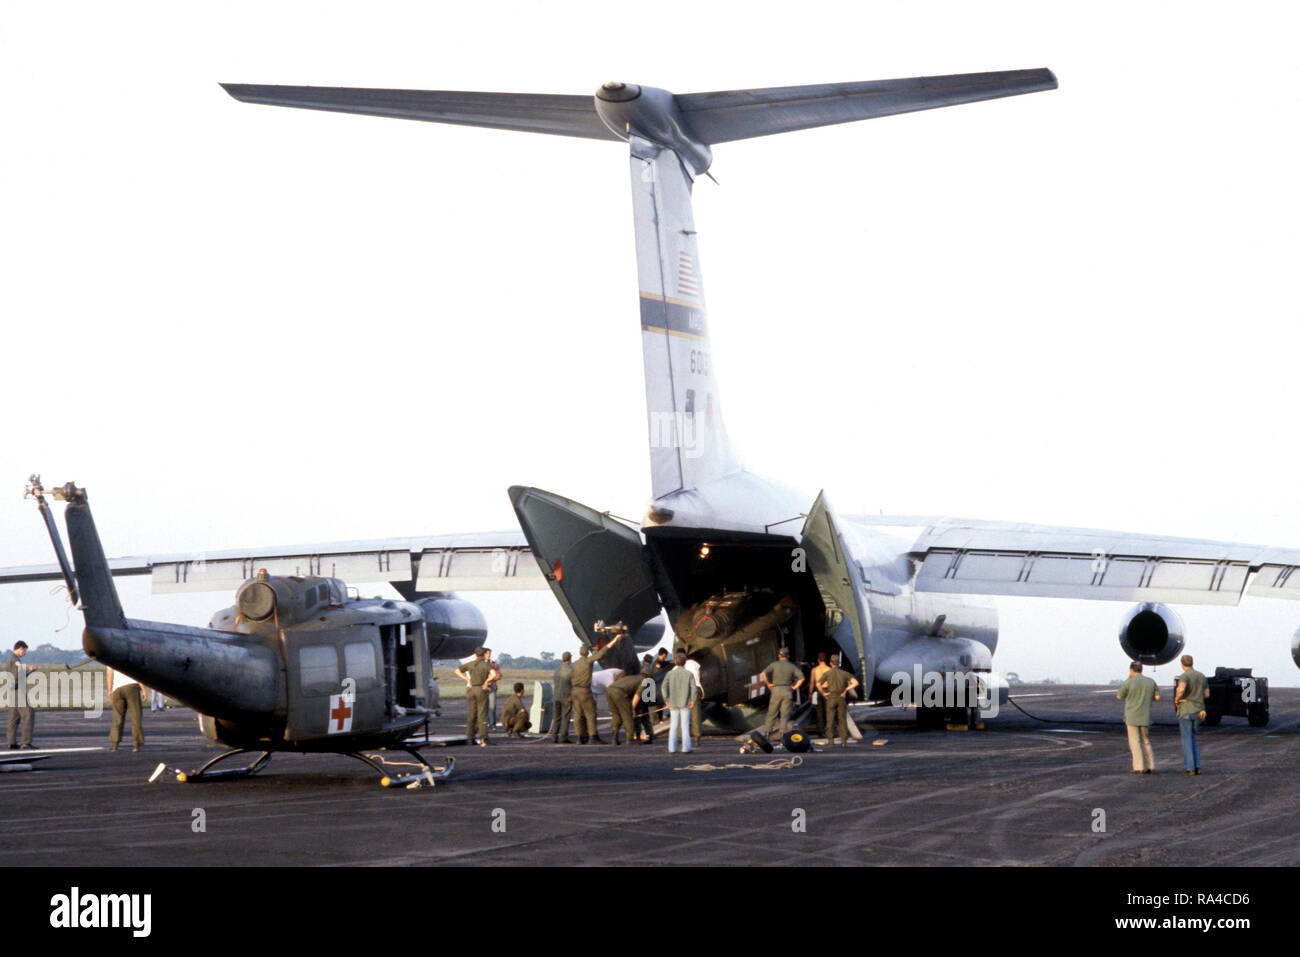 1978 - US Army UH-1 Iroquois Hubschrauber sind an Bord einer C-141 Starlifter Flugzeuge für den Transport zurück zu ihrer Heimatbasis in der Kanalzone geladen. Die Hubschrauber wurden während der humanitären Hilfsmaßnahmen nach Jonestown Tragödie verwendet. Stockfoto